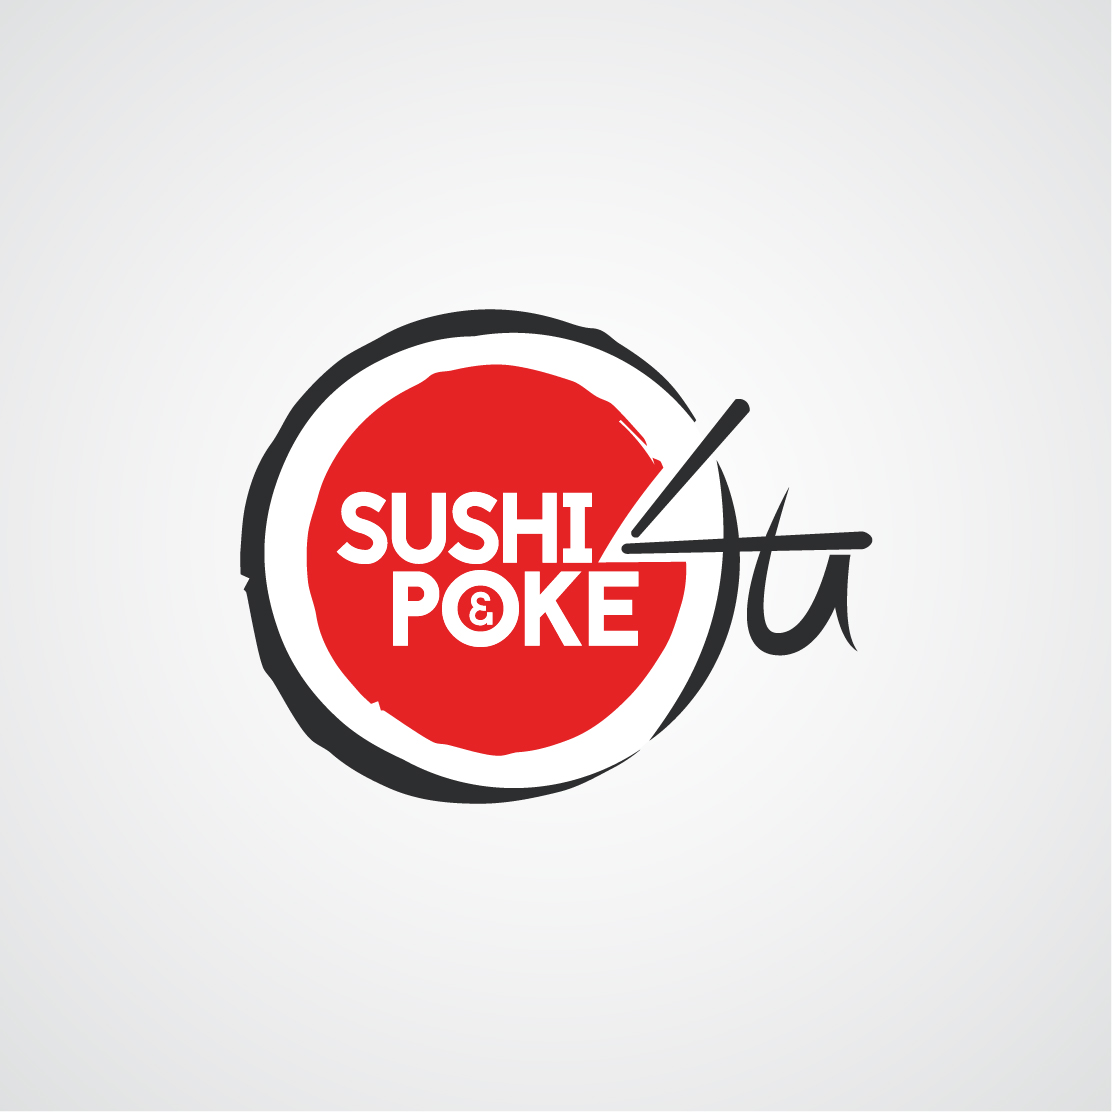 sushi and poke 4 u logo ontwerp almere